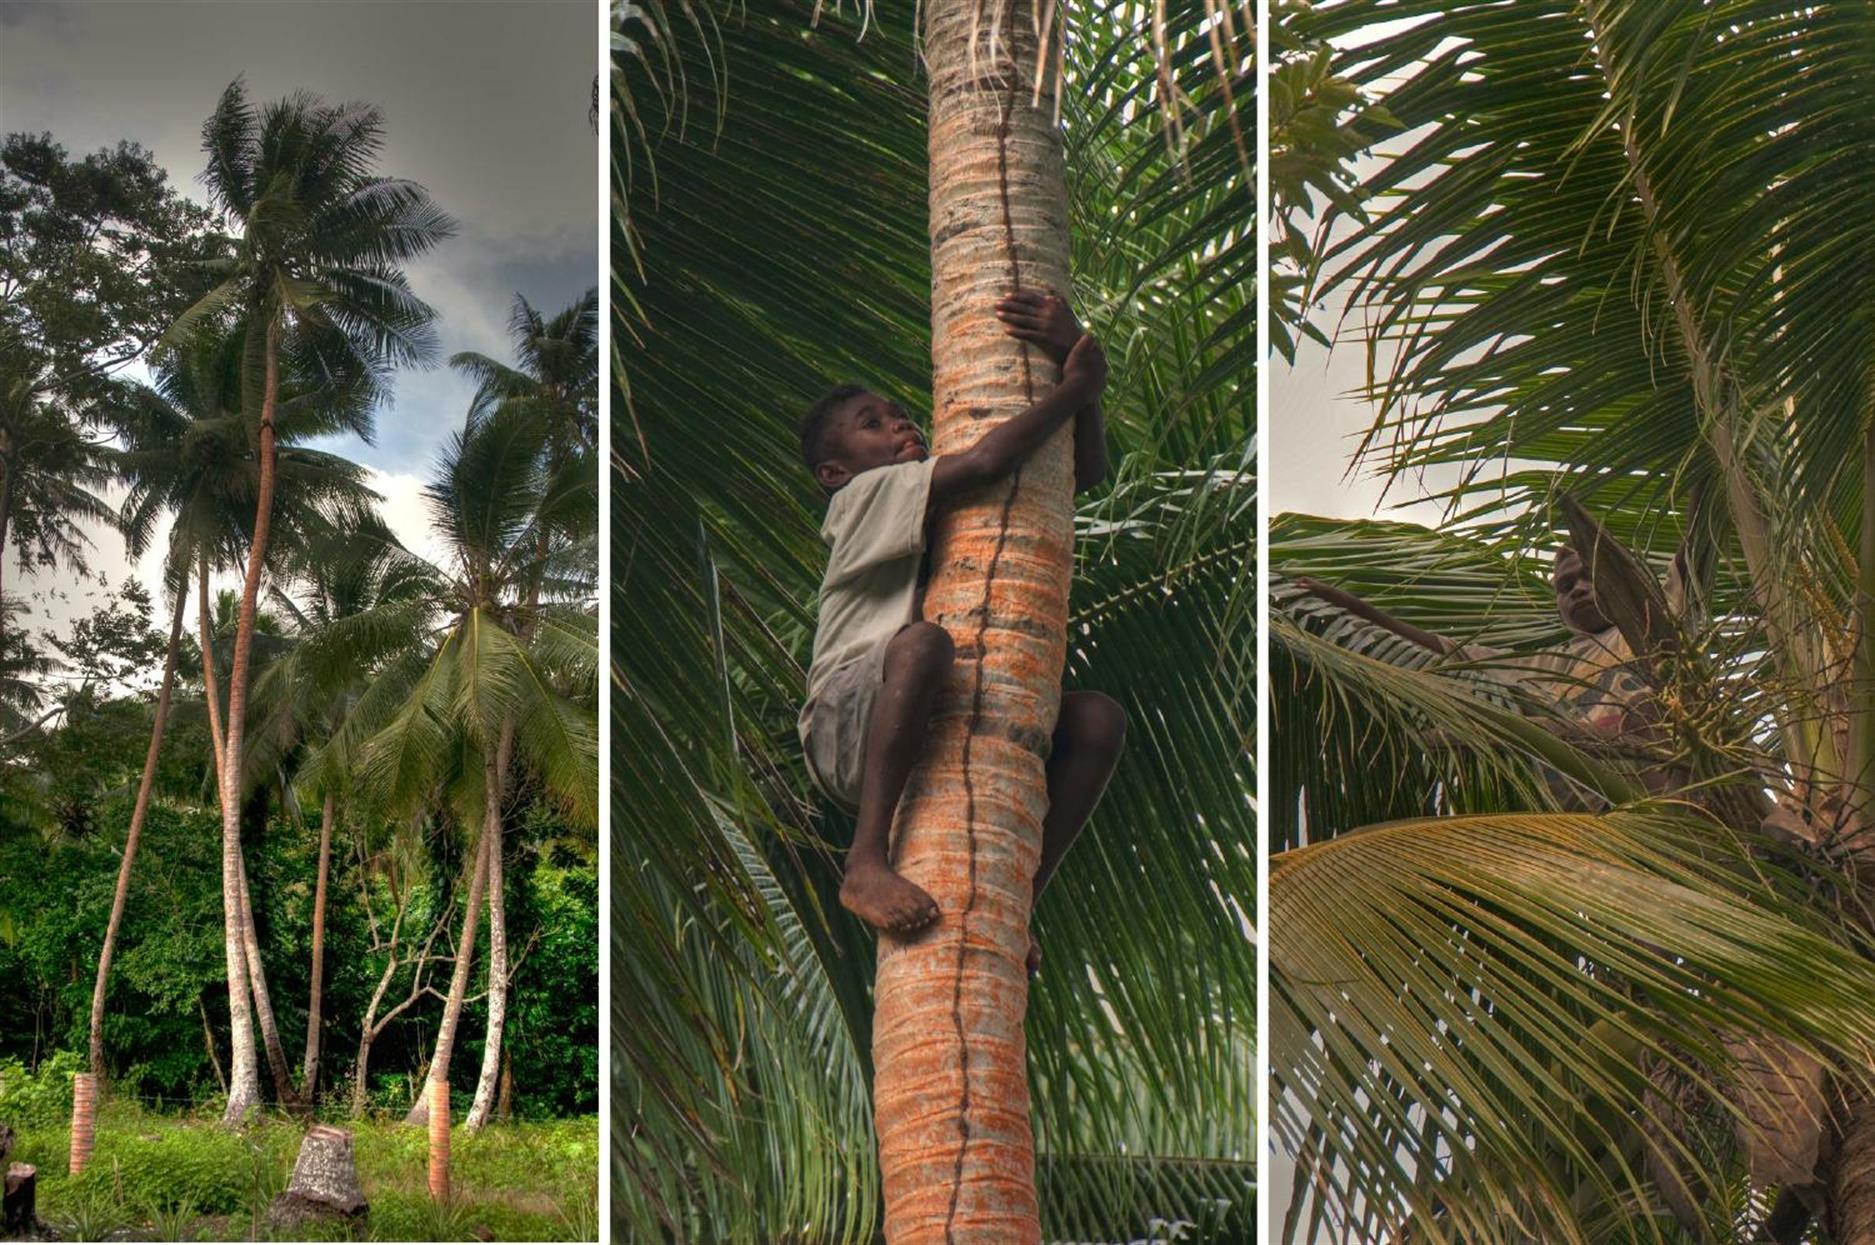 Der vielleicht 10-jährige kletterte innert ein oder zwei Minuten auf die Palme und holte uns - ohne jegliche Hilfsmittel - frische Kokosnüsse. Und wahrlich, er suchte sich für seine Kletterpartie nicht die kleinste Palme aus ...